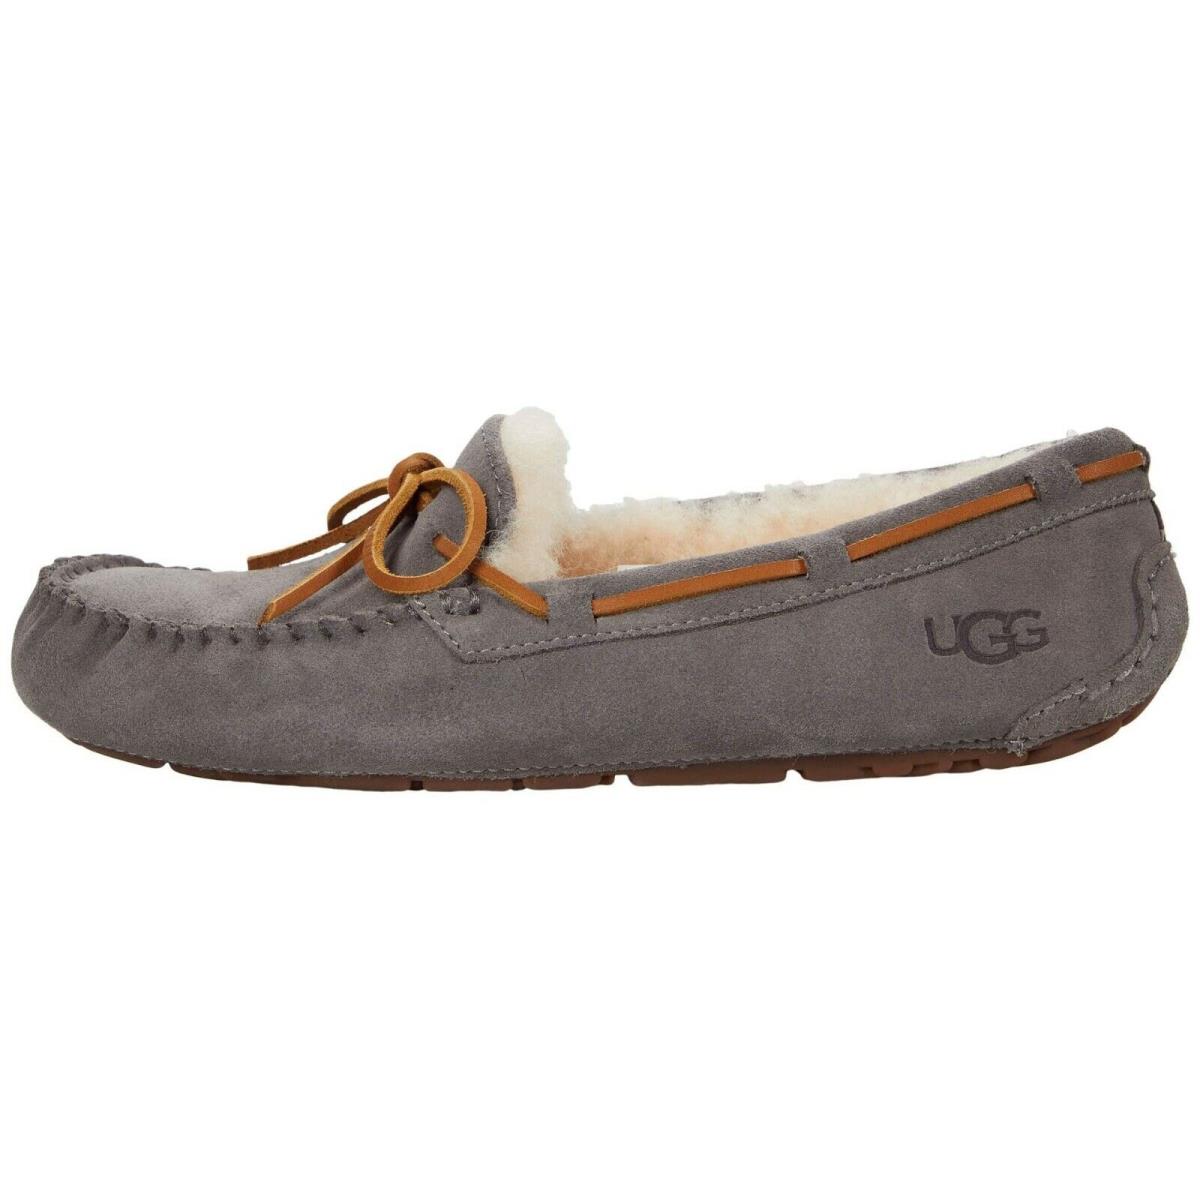 Women`s Shoes Ugg Dakota Suede Indoor/outdoor Moccasin Slippers 1107949 Pewter - Gray